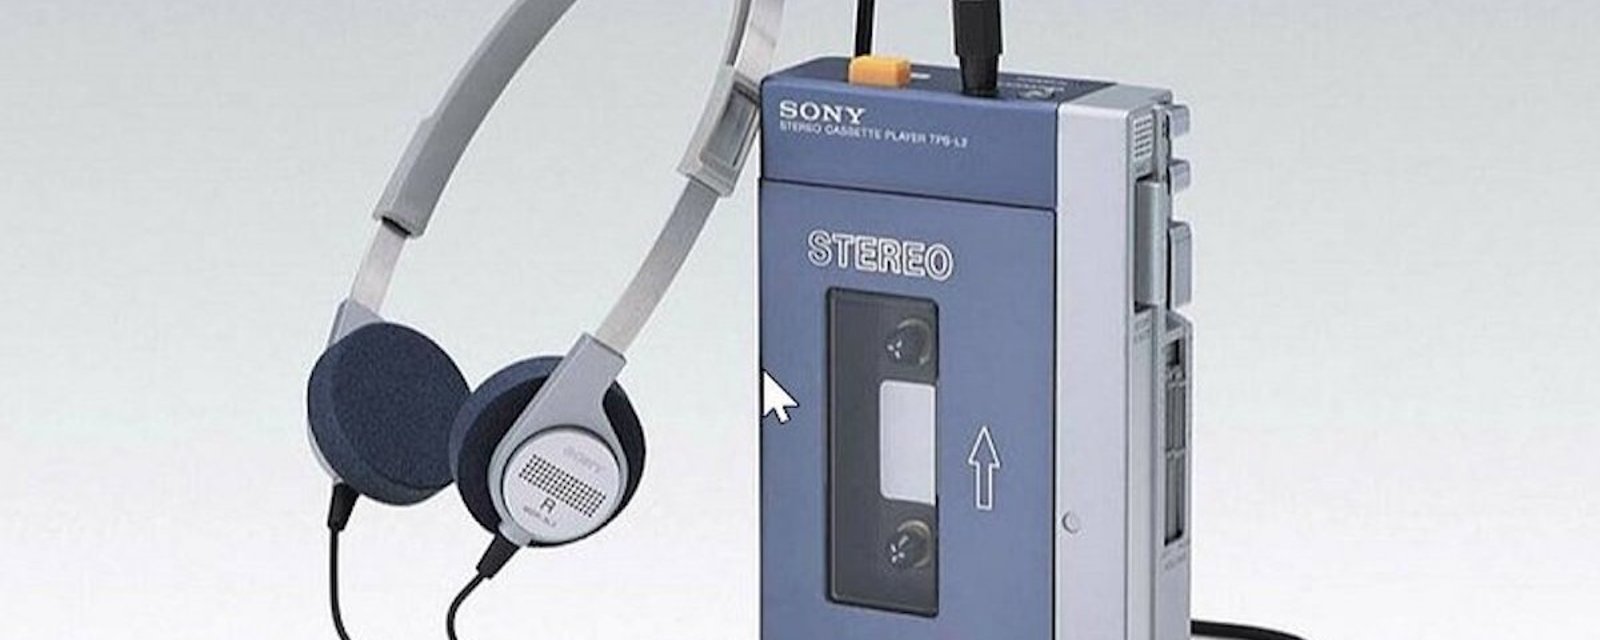 Pour les 40 ans du Walkman, Sony sort un tout nouveau modèle de l’appareil culte